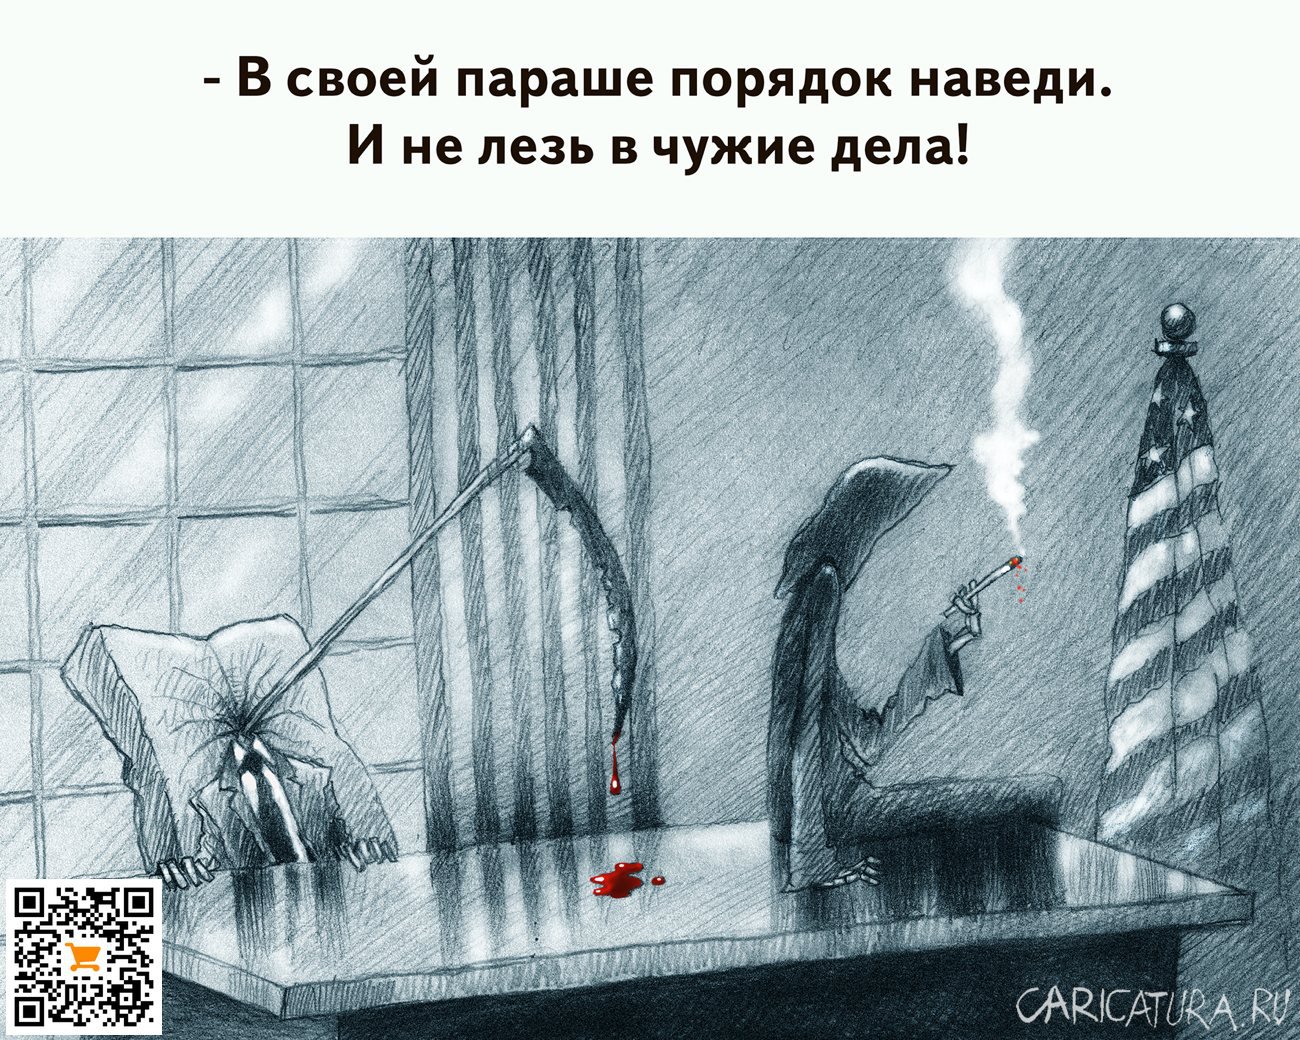 Карикатура "Жадность фрайера сгубила...", Александр Попов